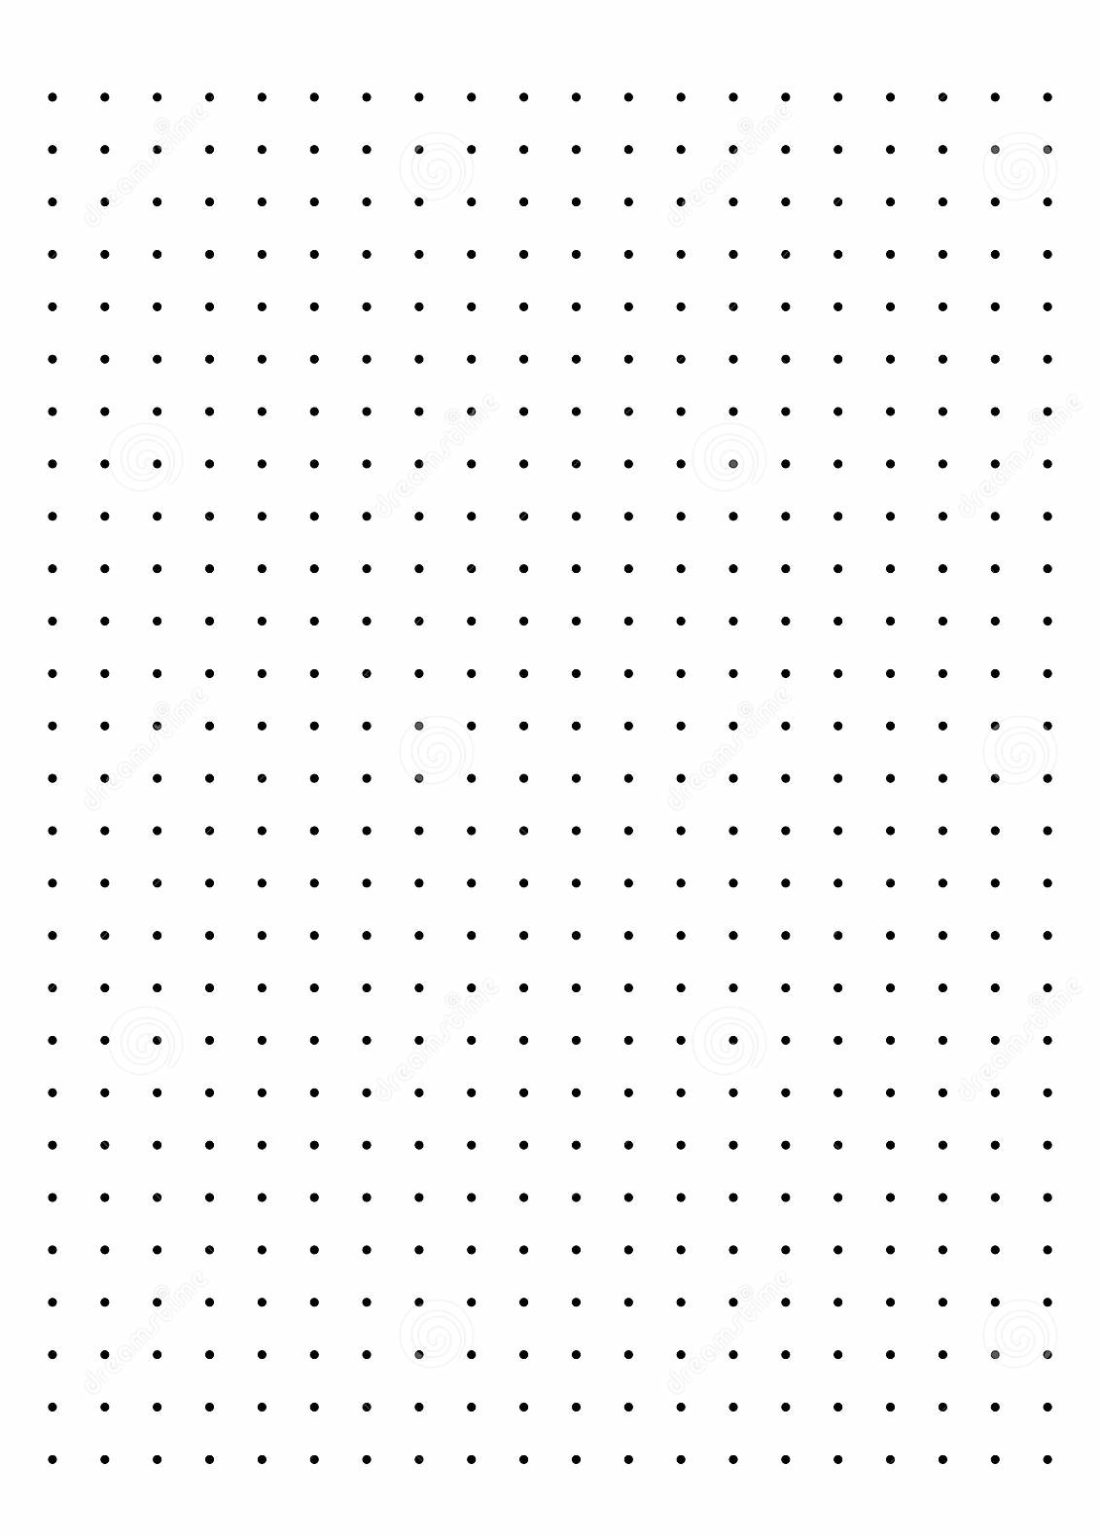 free-printable-dot-paper-or-dot-graph-template-pdf